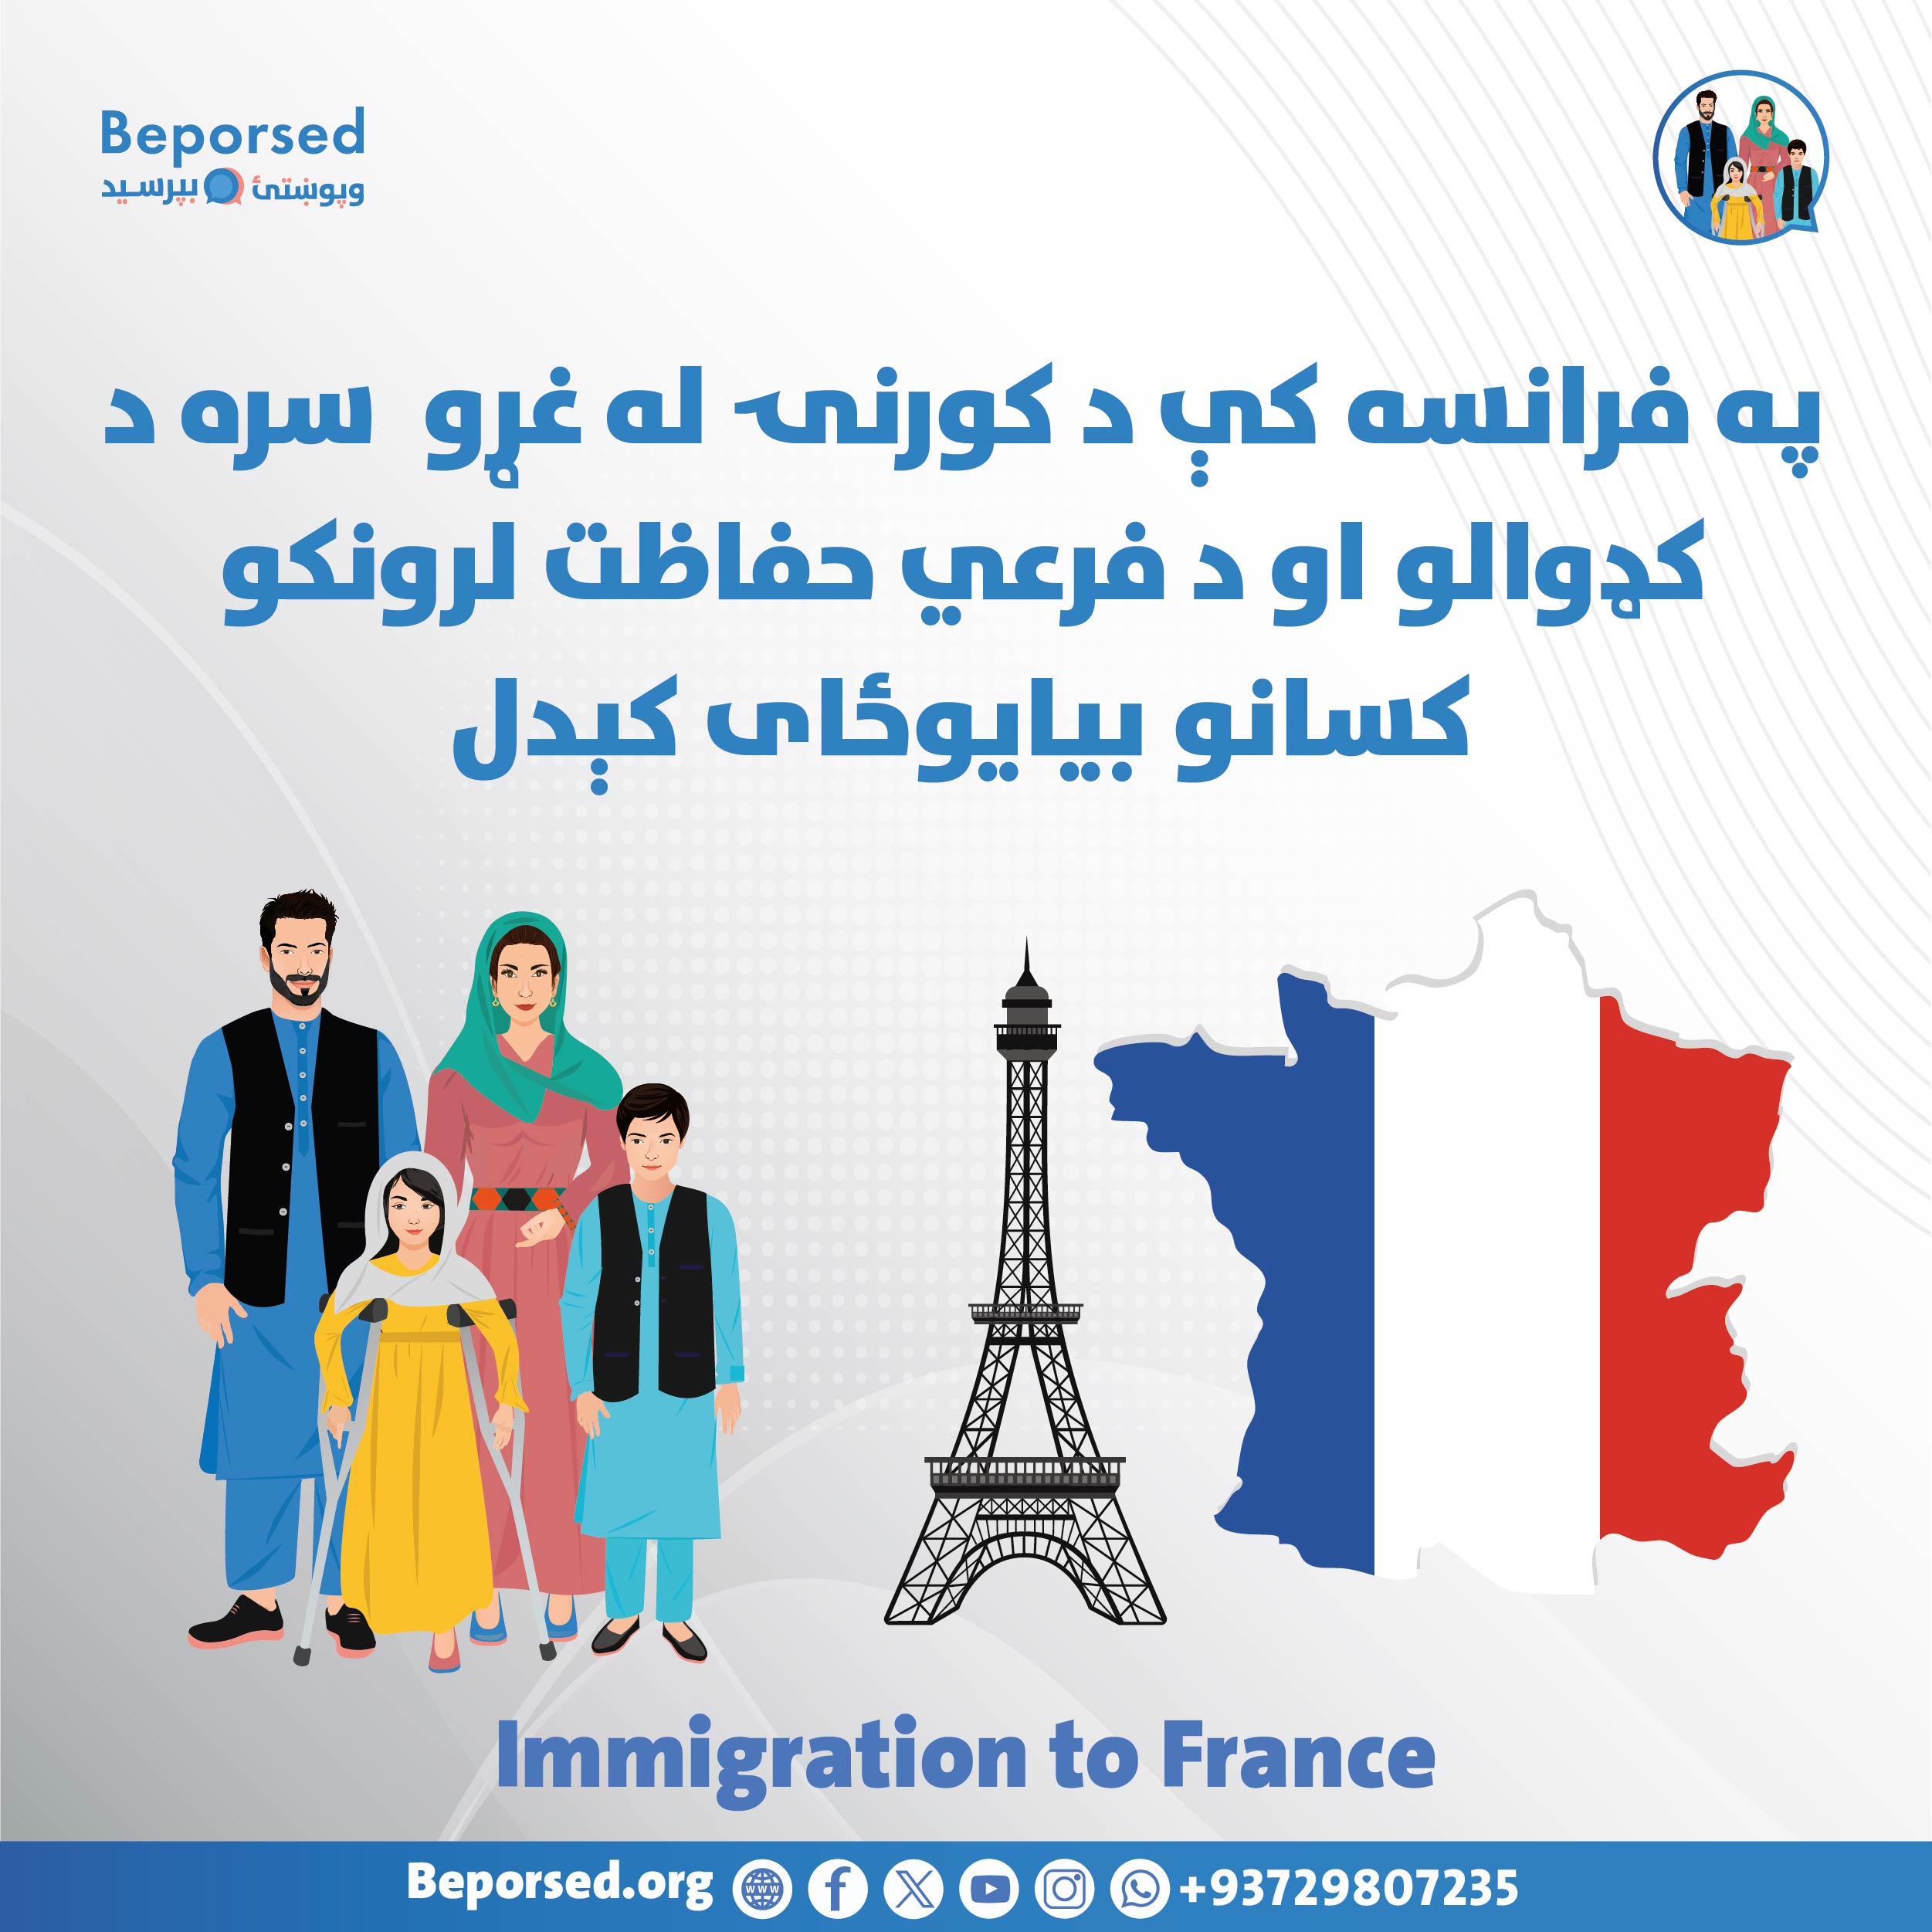 پیوستن مجدد اعضای خانواده با پناهندگان یا دارندگان حفاظت فرعی در فرانسه-02.jpg